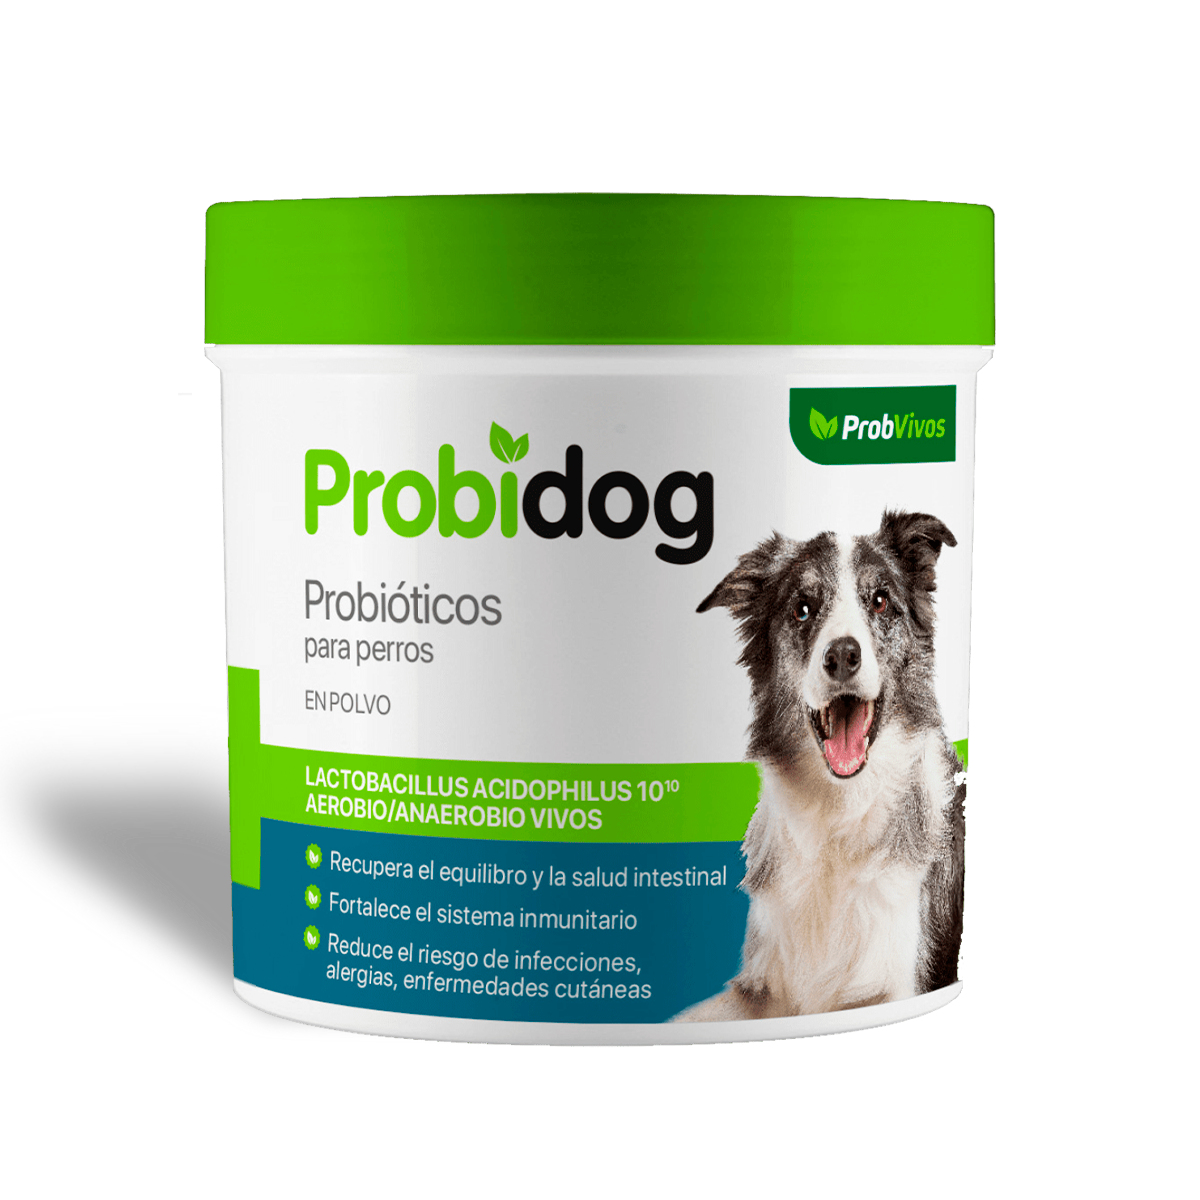 Probvivos Probidog Probióticos para Perros